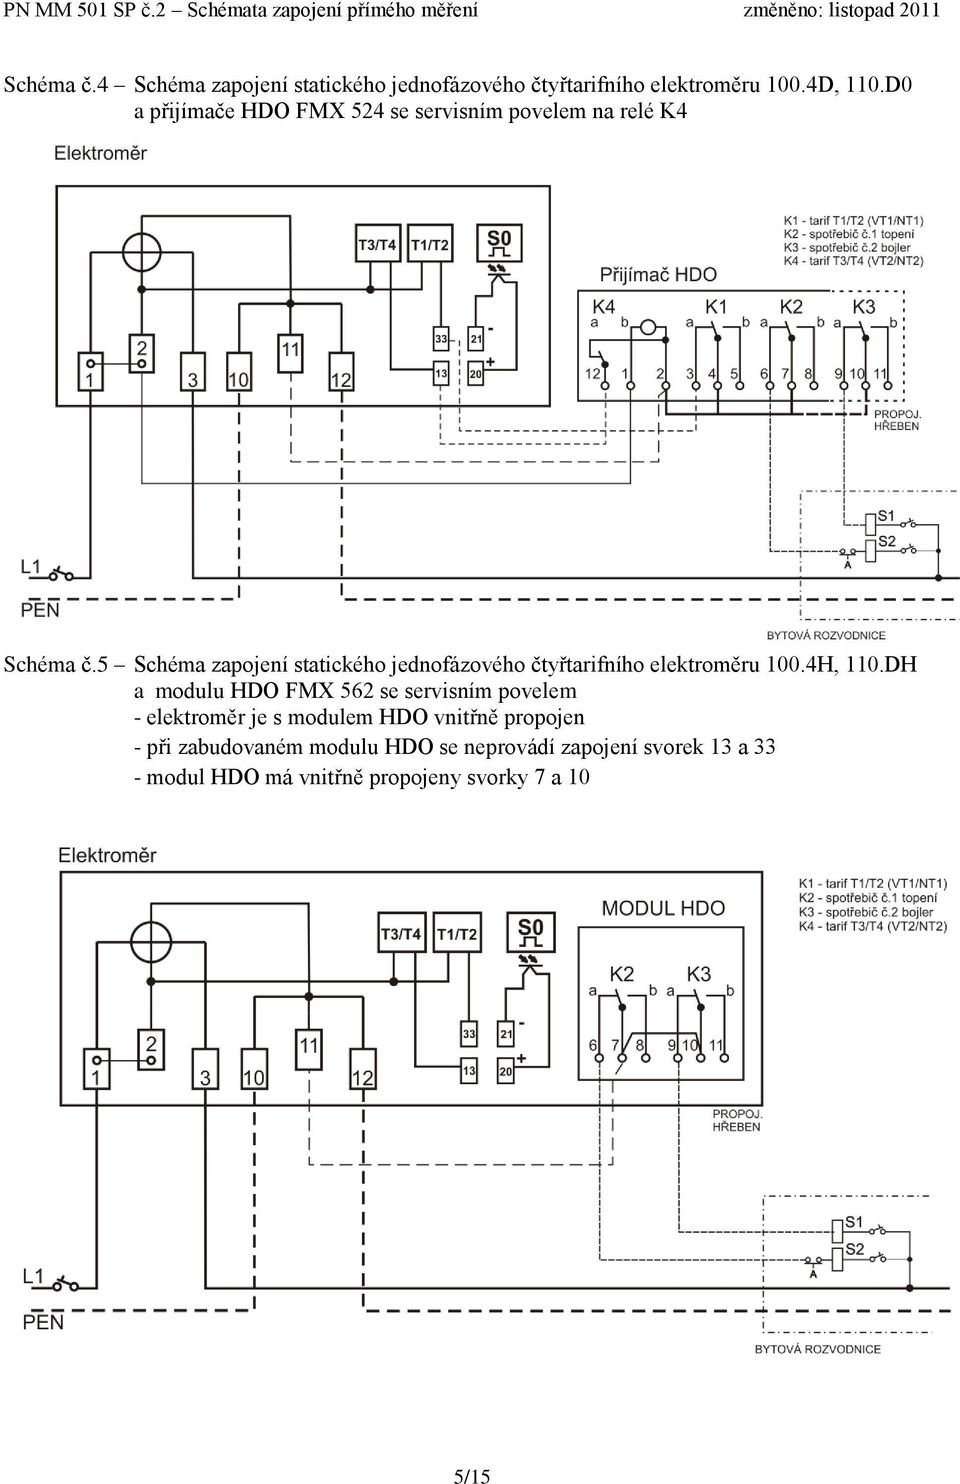 5 Schéma zapojení statického jednofázového čtyřtarifního elektroměru 100.4H, 110.